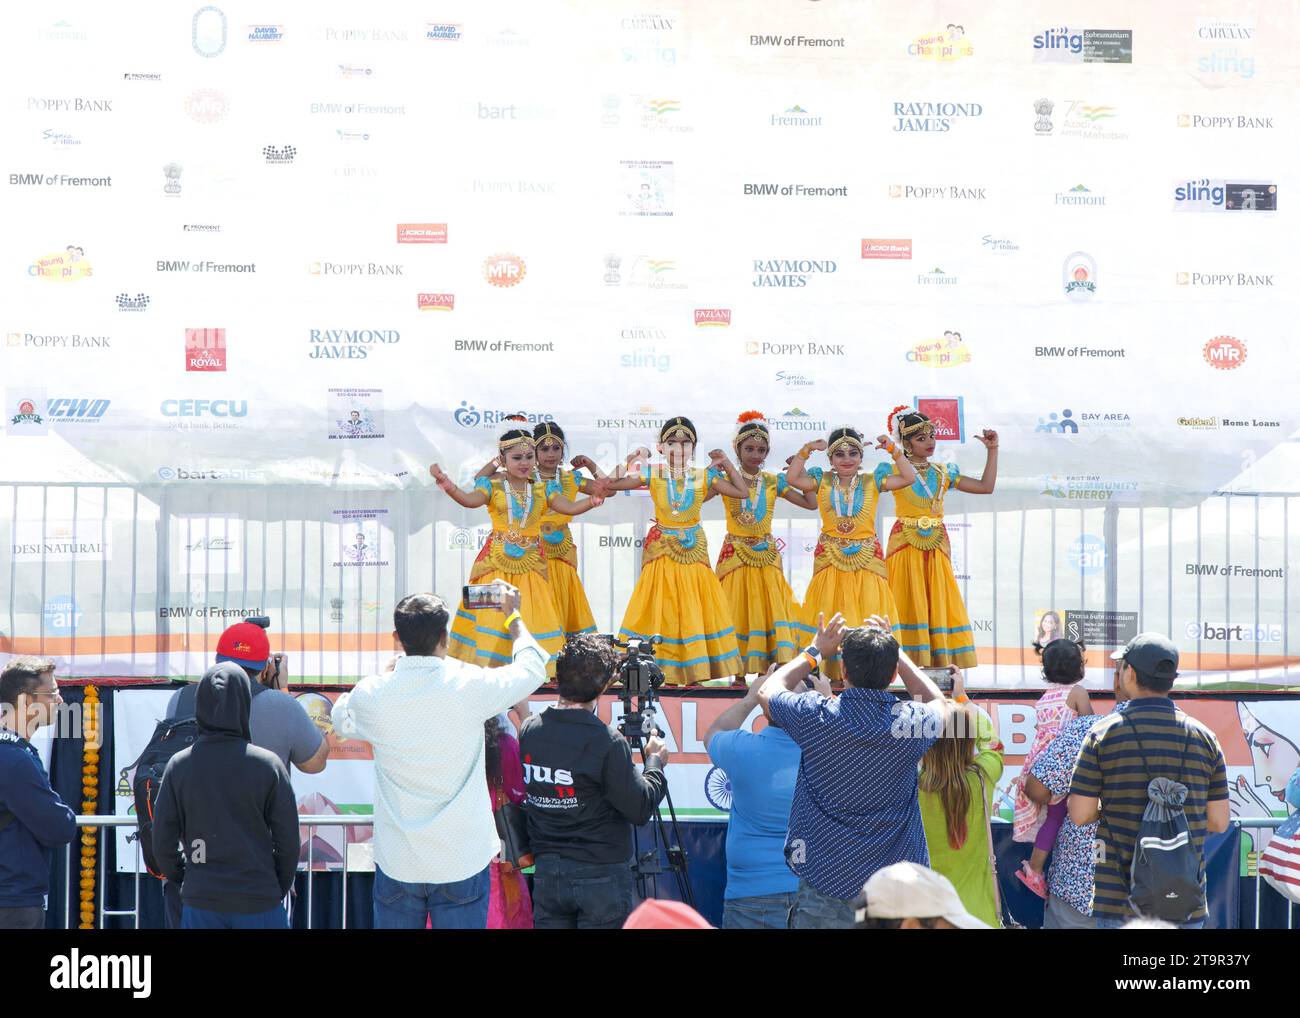 Fremont, CA - 19 août 2023 : participants au Festival FOG, Festival du Globe, anciennement connu sous le nom de Festival de l'Inde. Enfants jouant dans un dan Banque D'Images